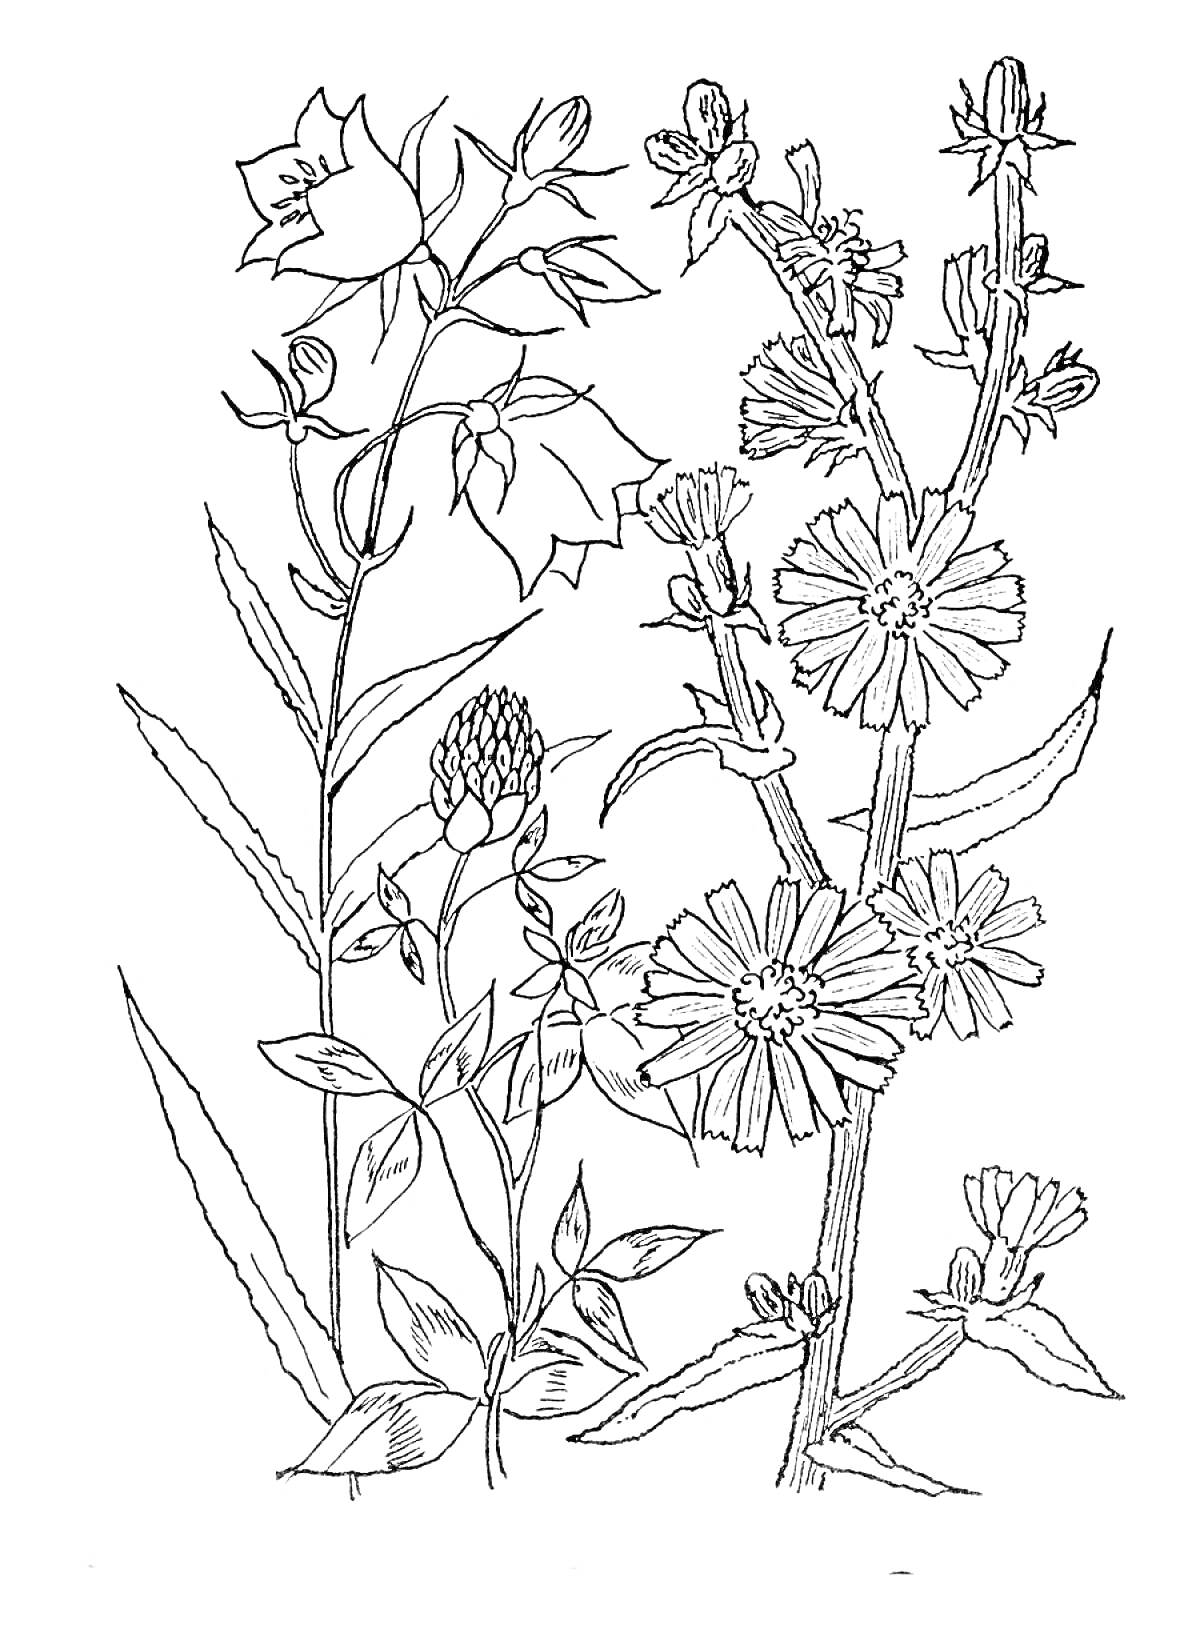  Цветы на лугу с колокольчиками, клевером и одуванчиками